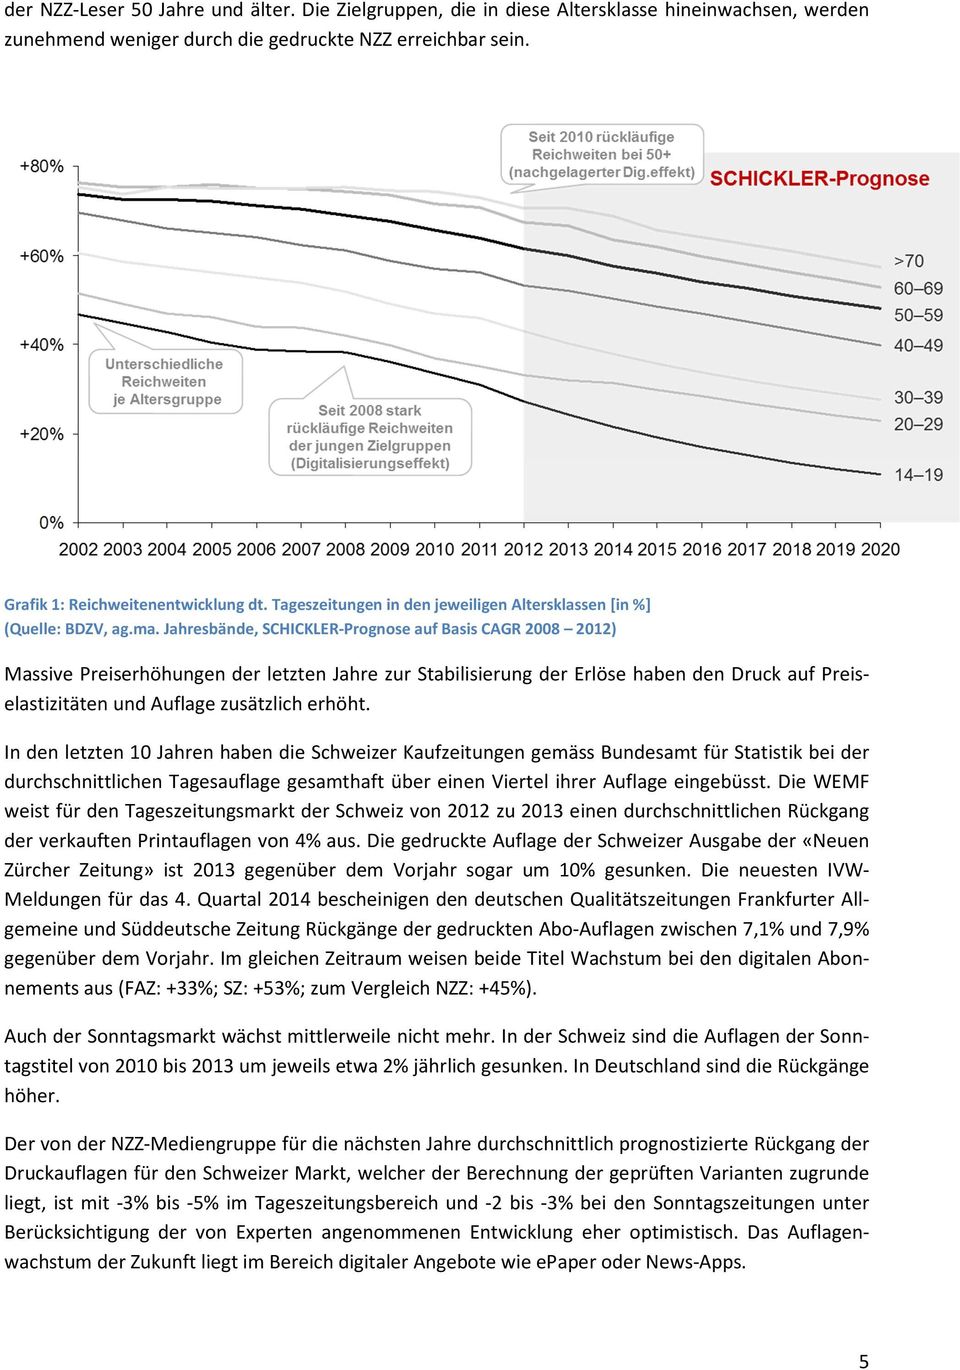 Jahresbände, SCHICKLER-Prognose auf Basis CAGR 2008 2012) Massive Preiserhöhungen der letzten Jahre zur Stabilisierung der Erlöse haben den Druck auf Preiselastizitäten und Auflage zusätzlich erhöht.